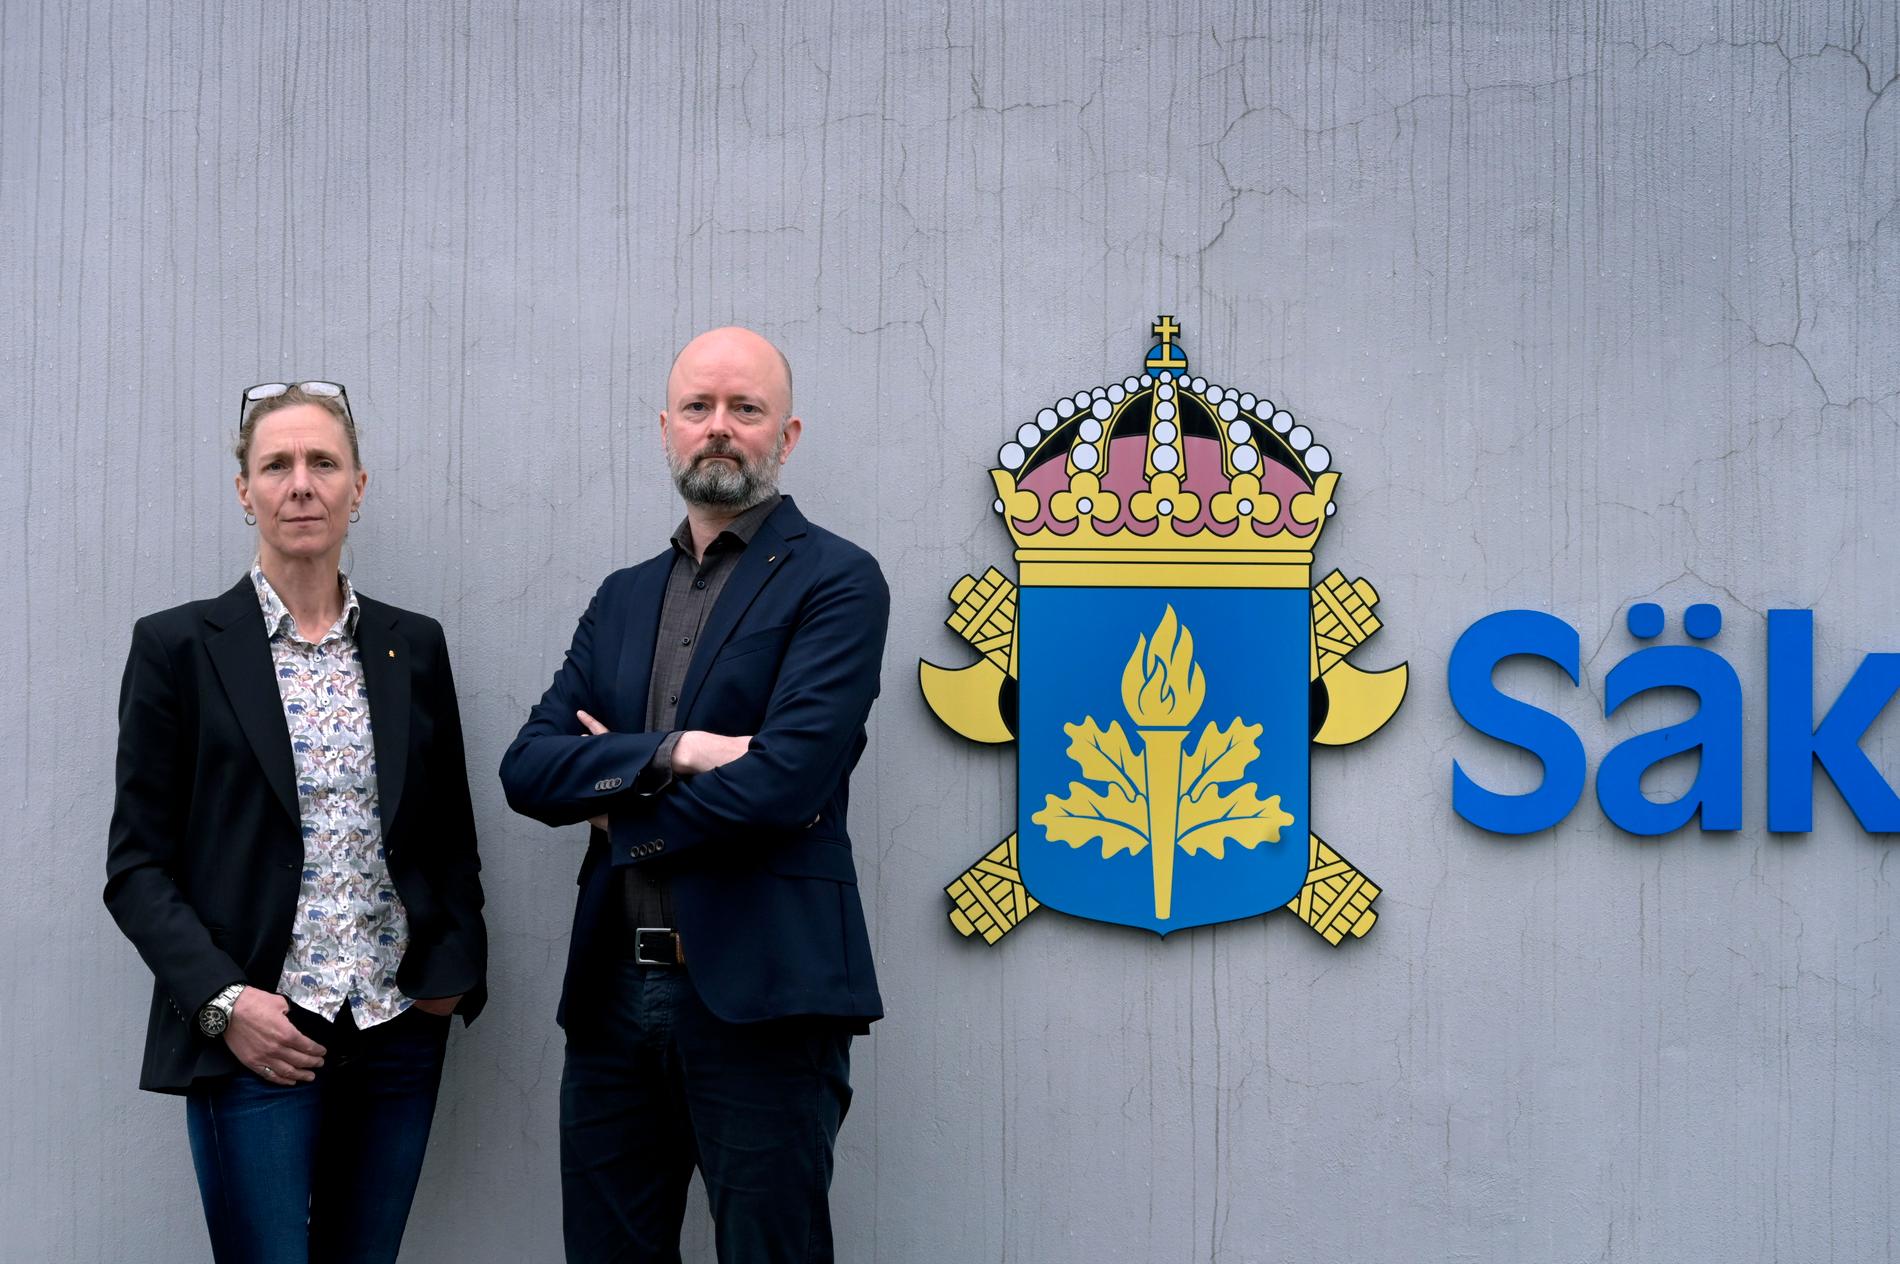 Den ökade underrättelseverksamheten mot svenska lärosäten är en del av den breddade hotbilden mot Sverige som Säpo har noterat under flera år, säger Åsa Ahl och Kennet Alexandersson vid Säkerhetspolisen.